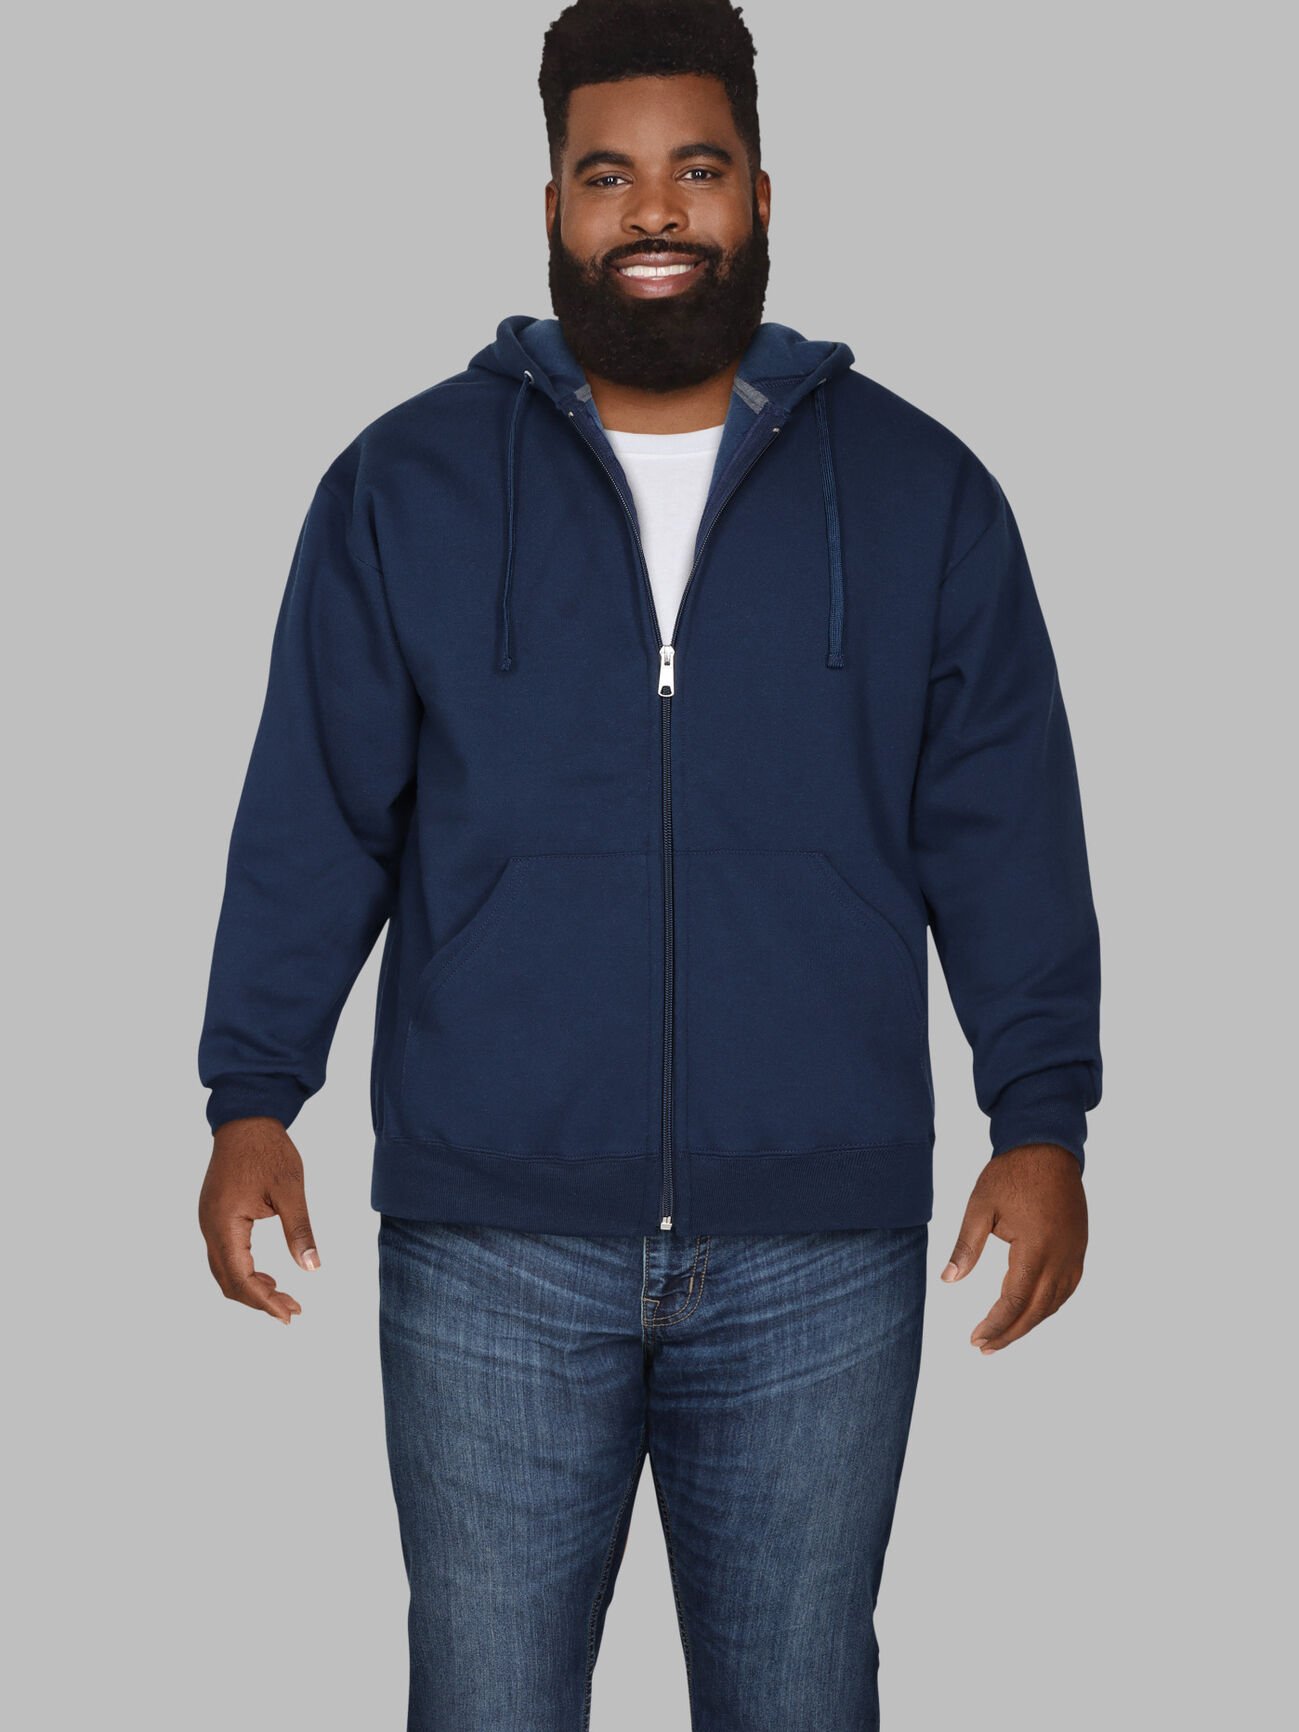 Big Men's Eversoft®  Fleece Full Zip Hoodie Sweatshirt Blue Cove